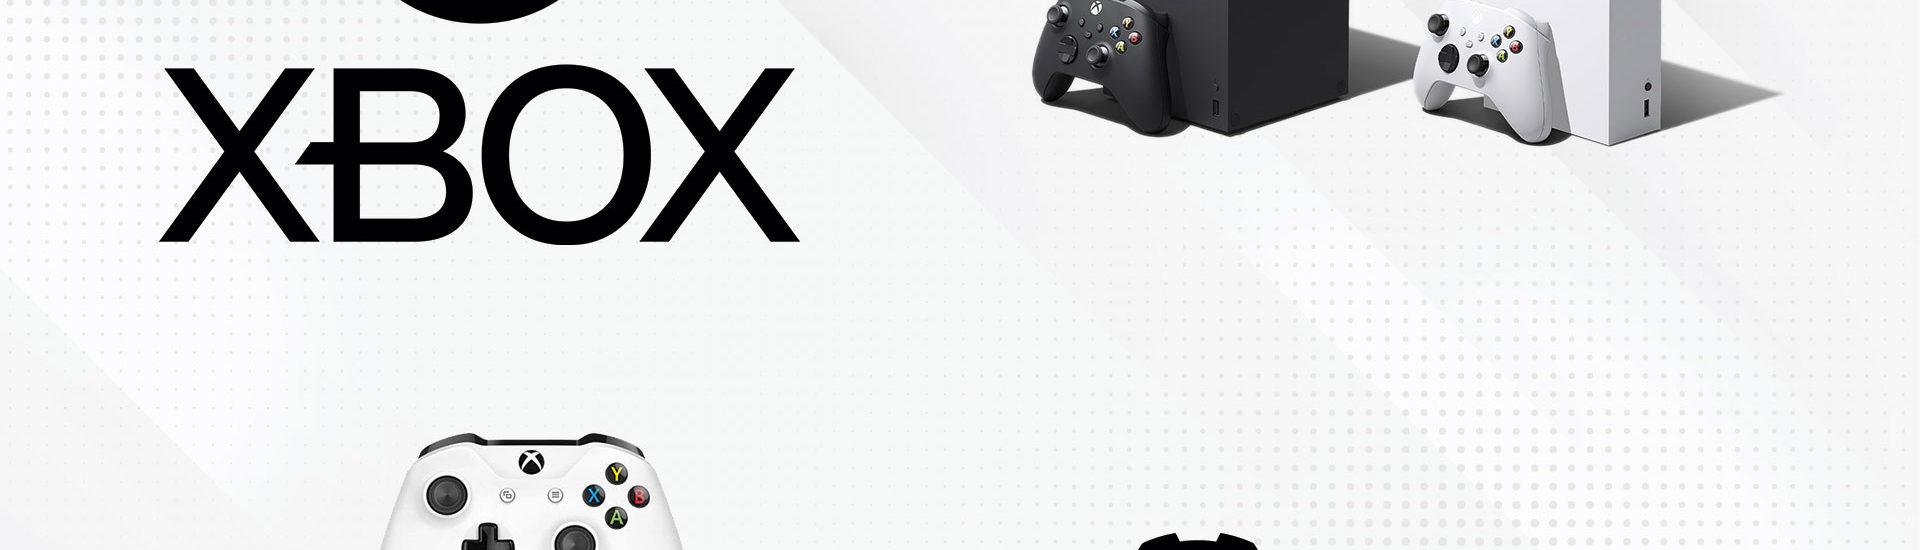 Discord Voice Chat erscheint für Xbox-Konsolen